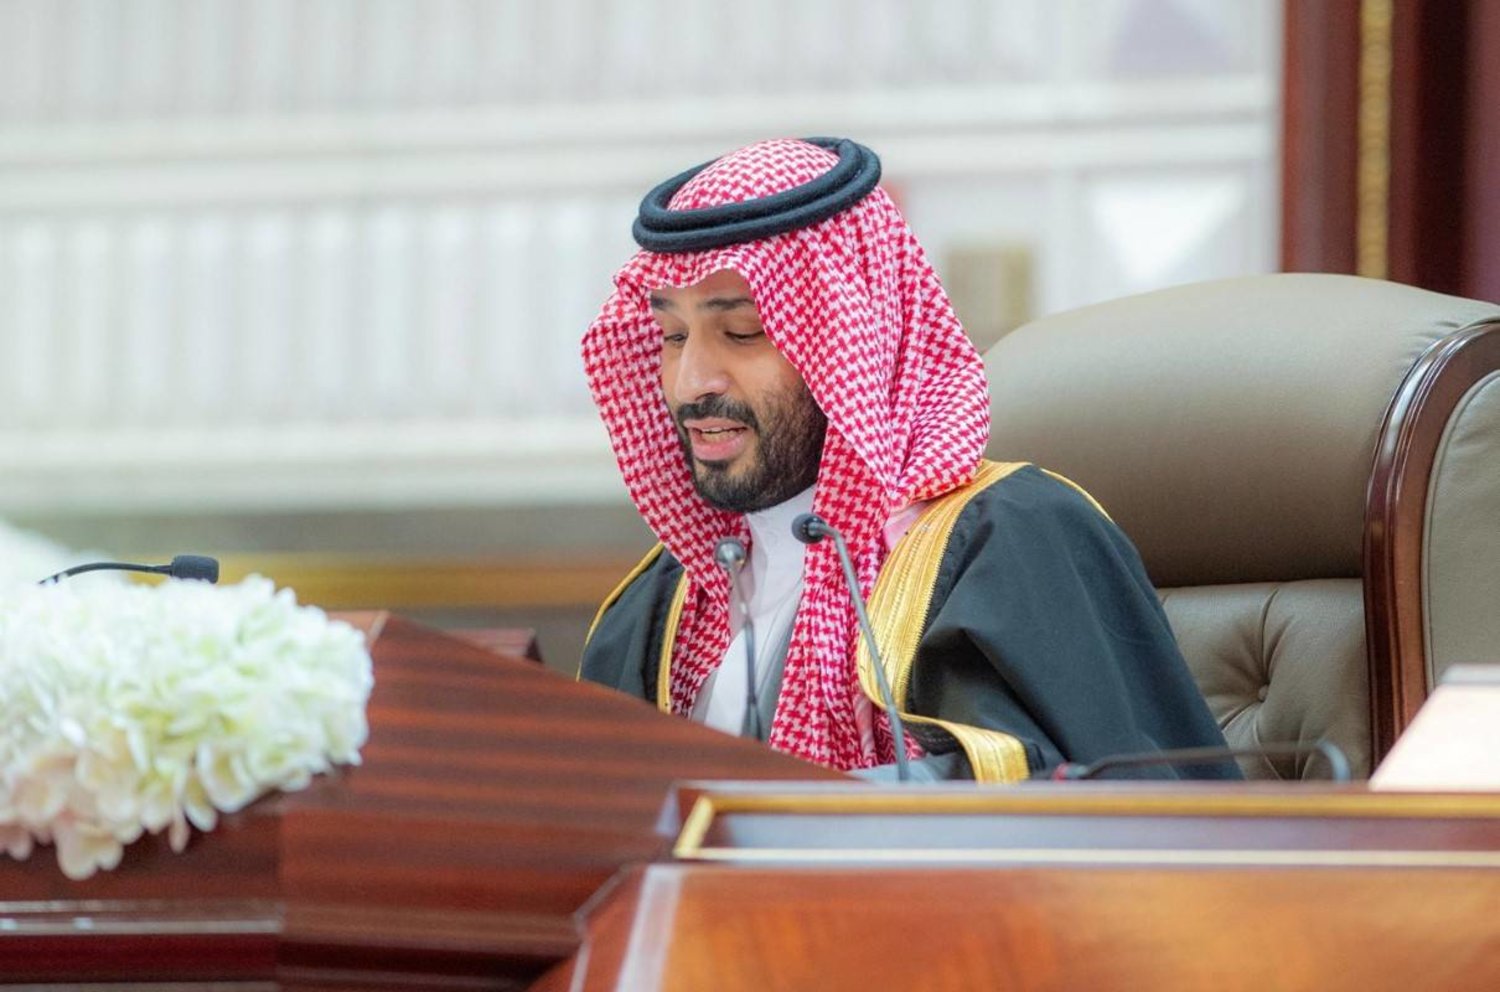 الأمير محمد بن سلمان بن عبدالعزيز آل سعود، ولي العهد رئيس مجلس الوزراء